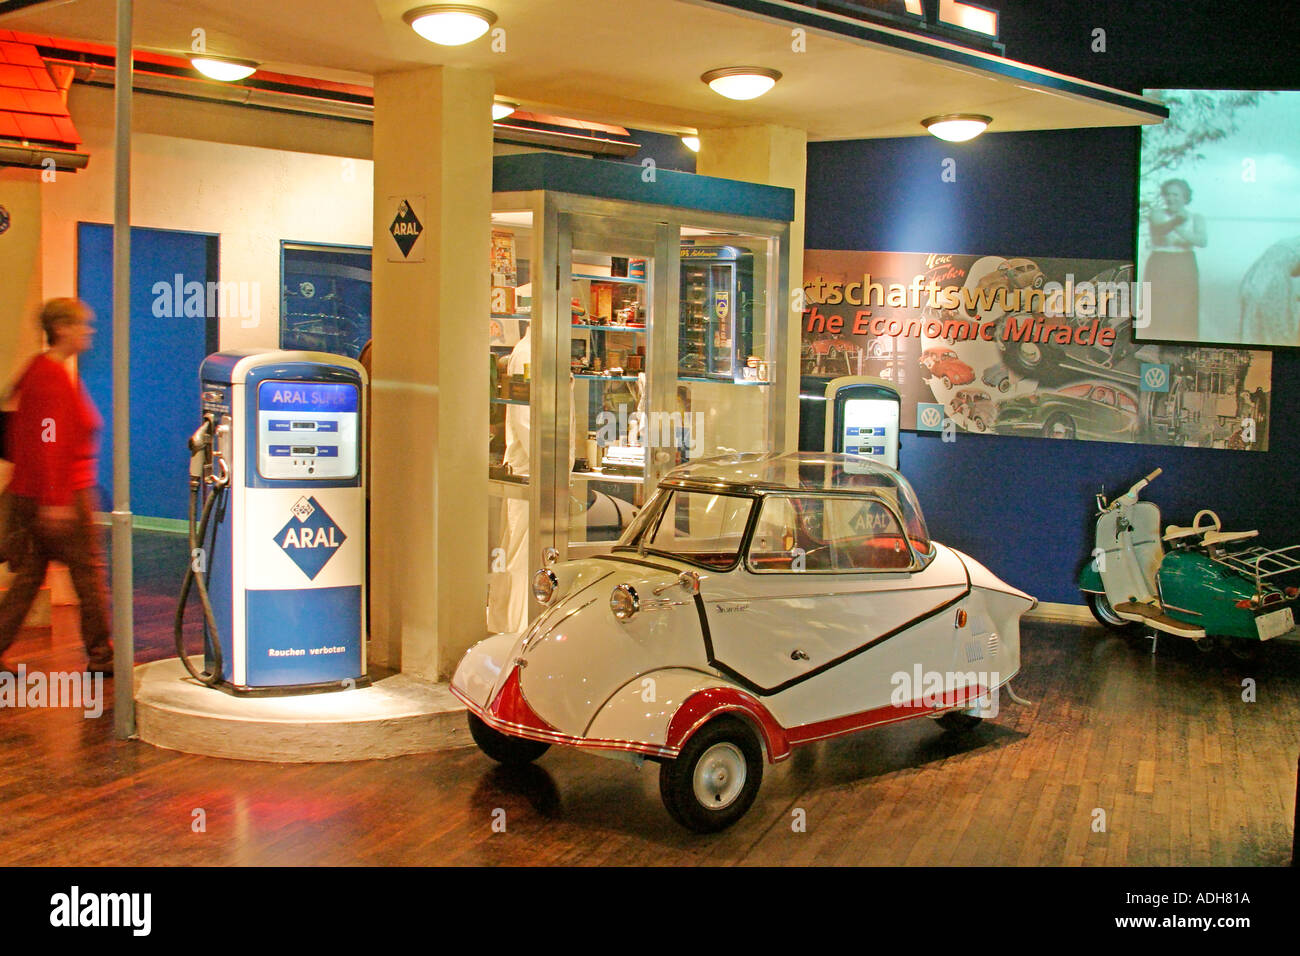 Deutschland Wolfsburg Autostadt Auto von Volkswagen AG Stadtmuseum  fünfziger Jahre Messerschmitt Kabinen Roller Aral-Tankstelle 1950  Stockfotografie - Alamy